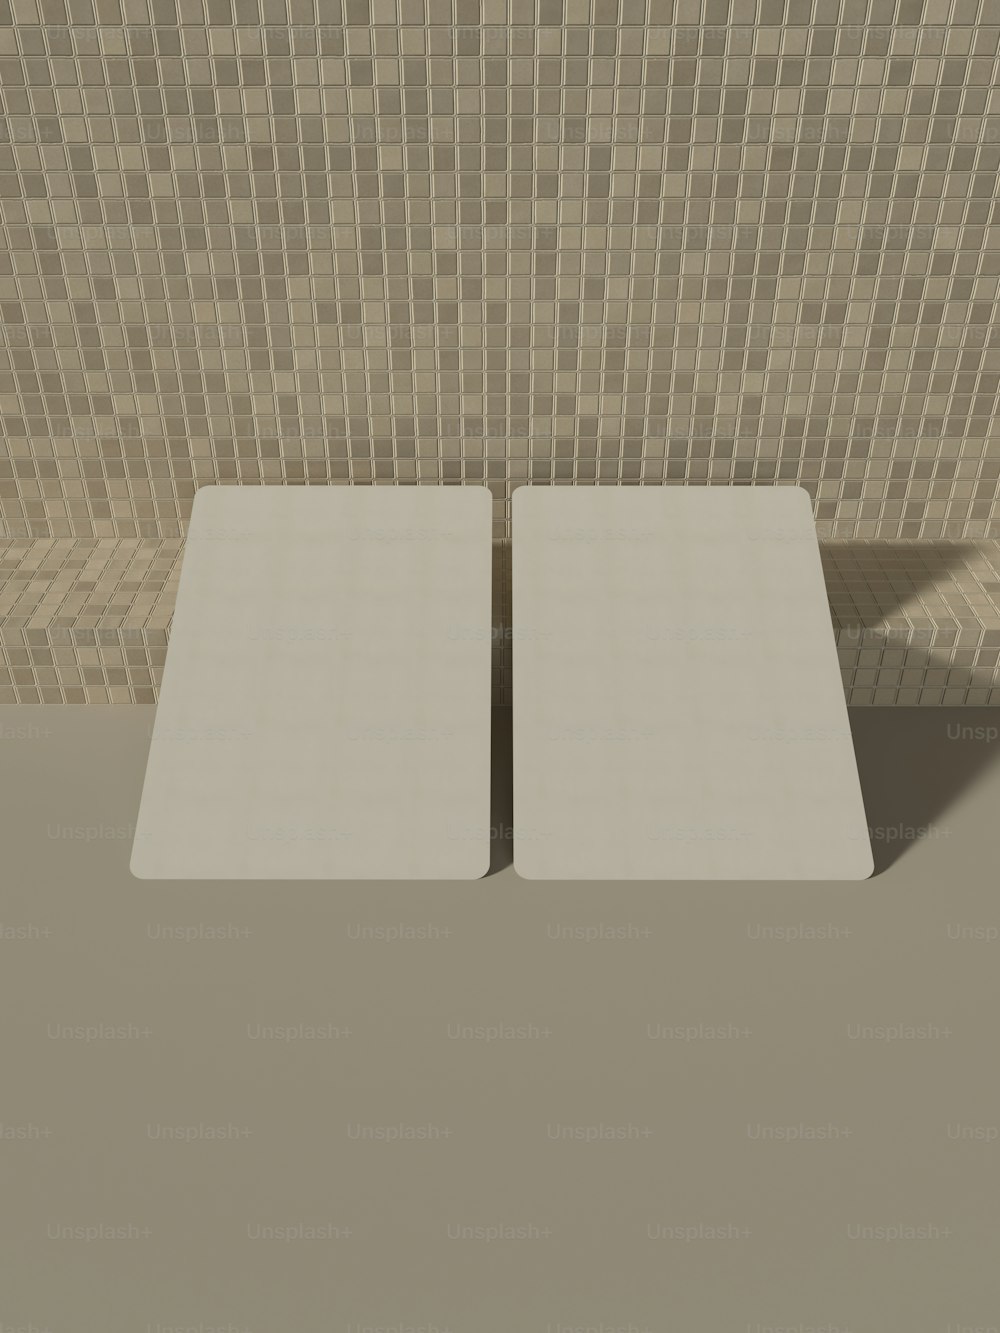 Un paio di tavoli quadrati bianchi davanti a una parete piastrellata